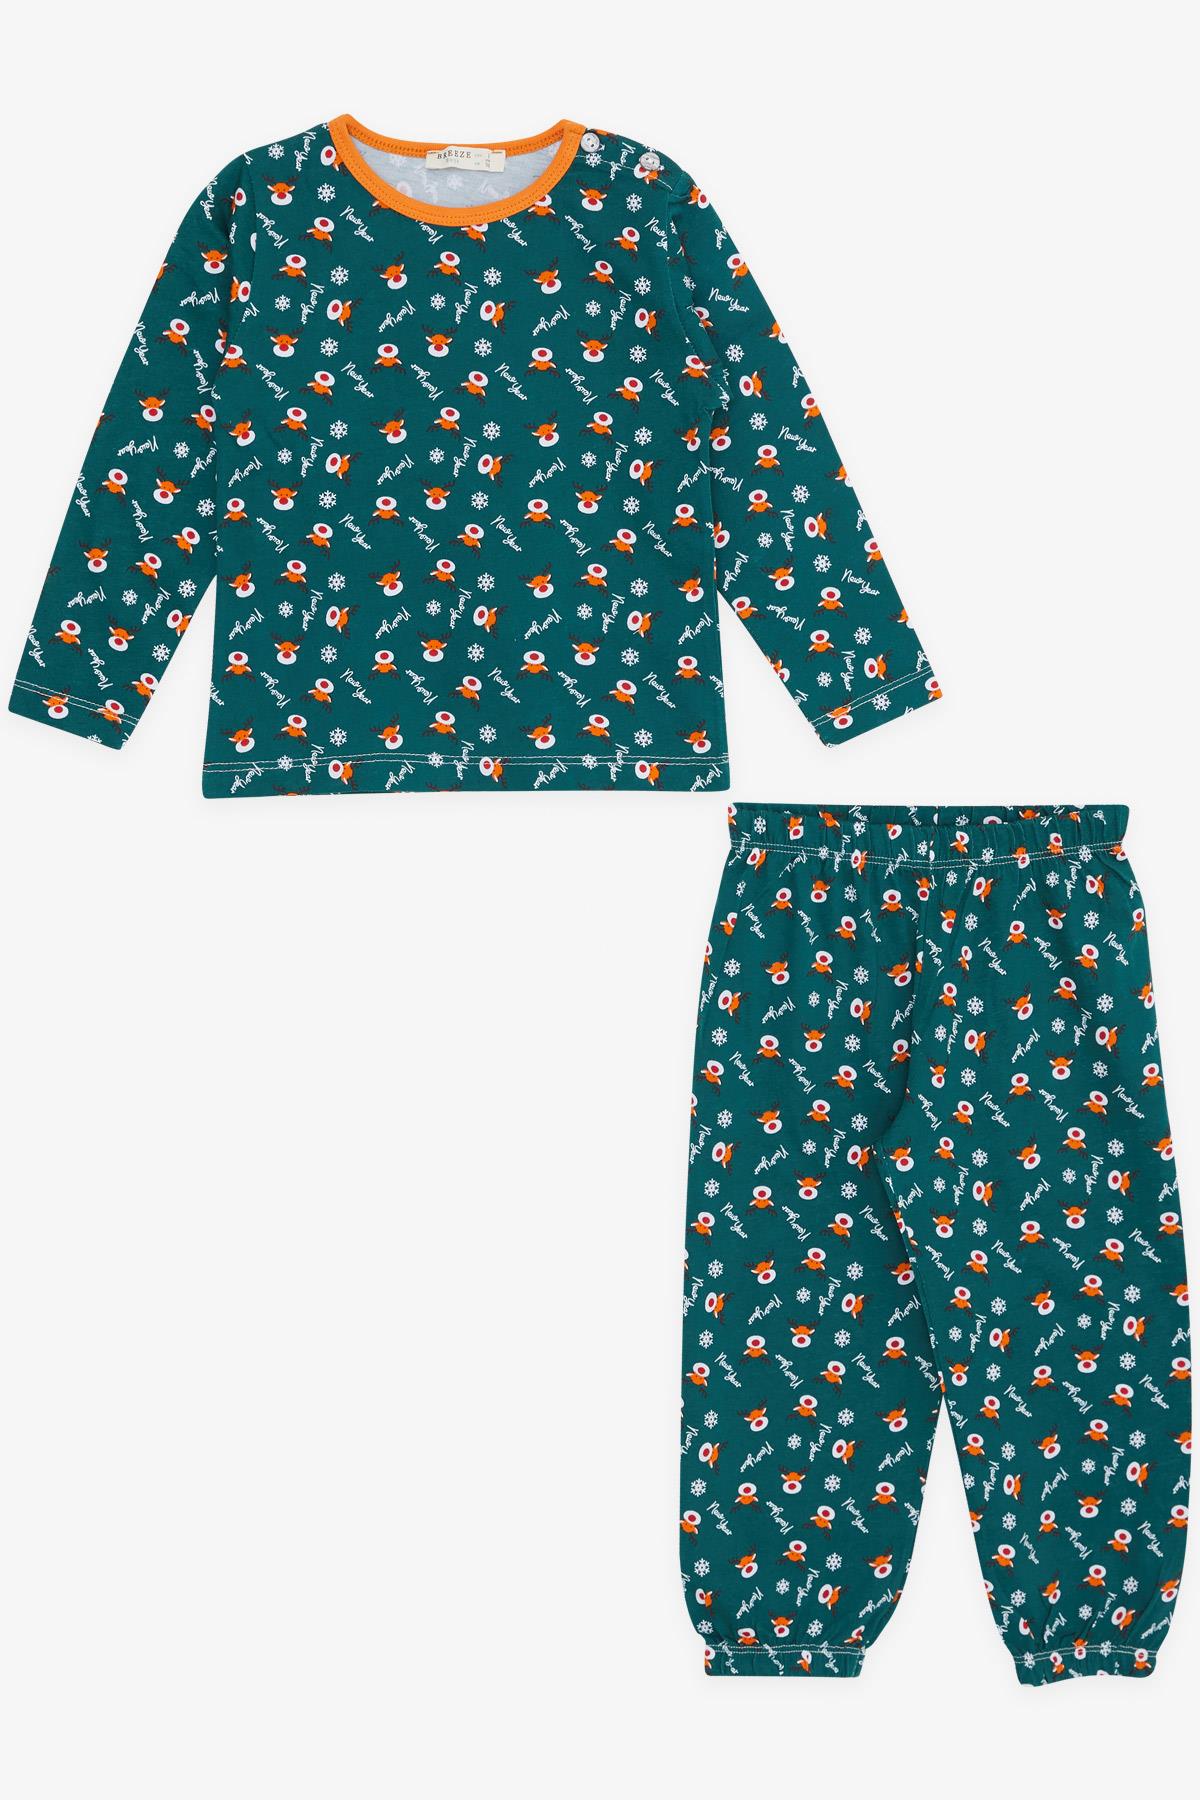 Erkek Bebek Pijama Takımı Yılbaşı Temalı Yeşil 9 Ay-3 Yaş - Yumuşak Kumaşlı  Çocuk Pijamaları | Breeze